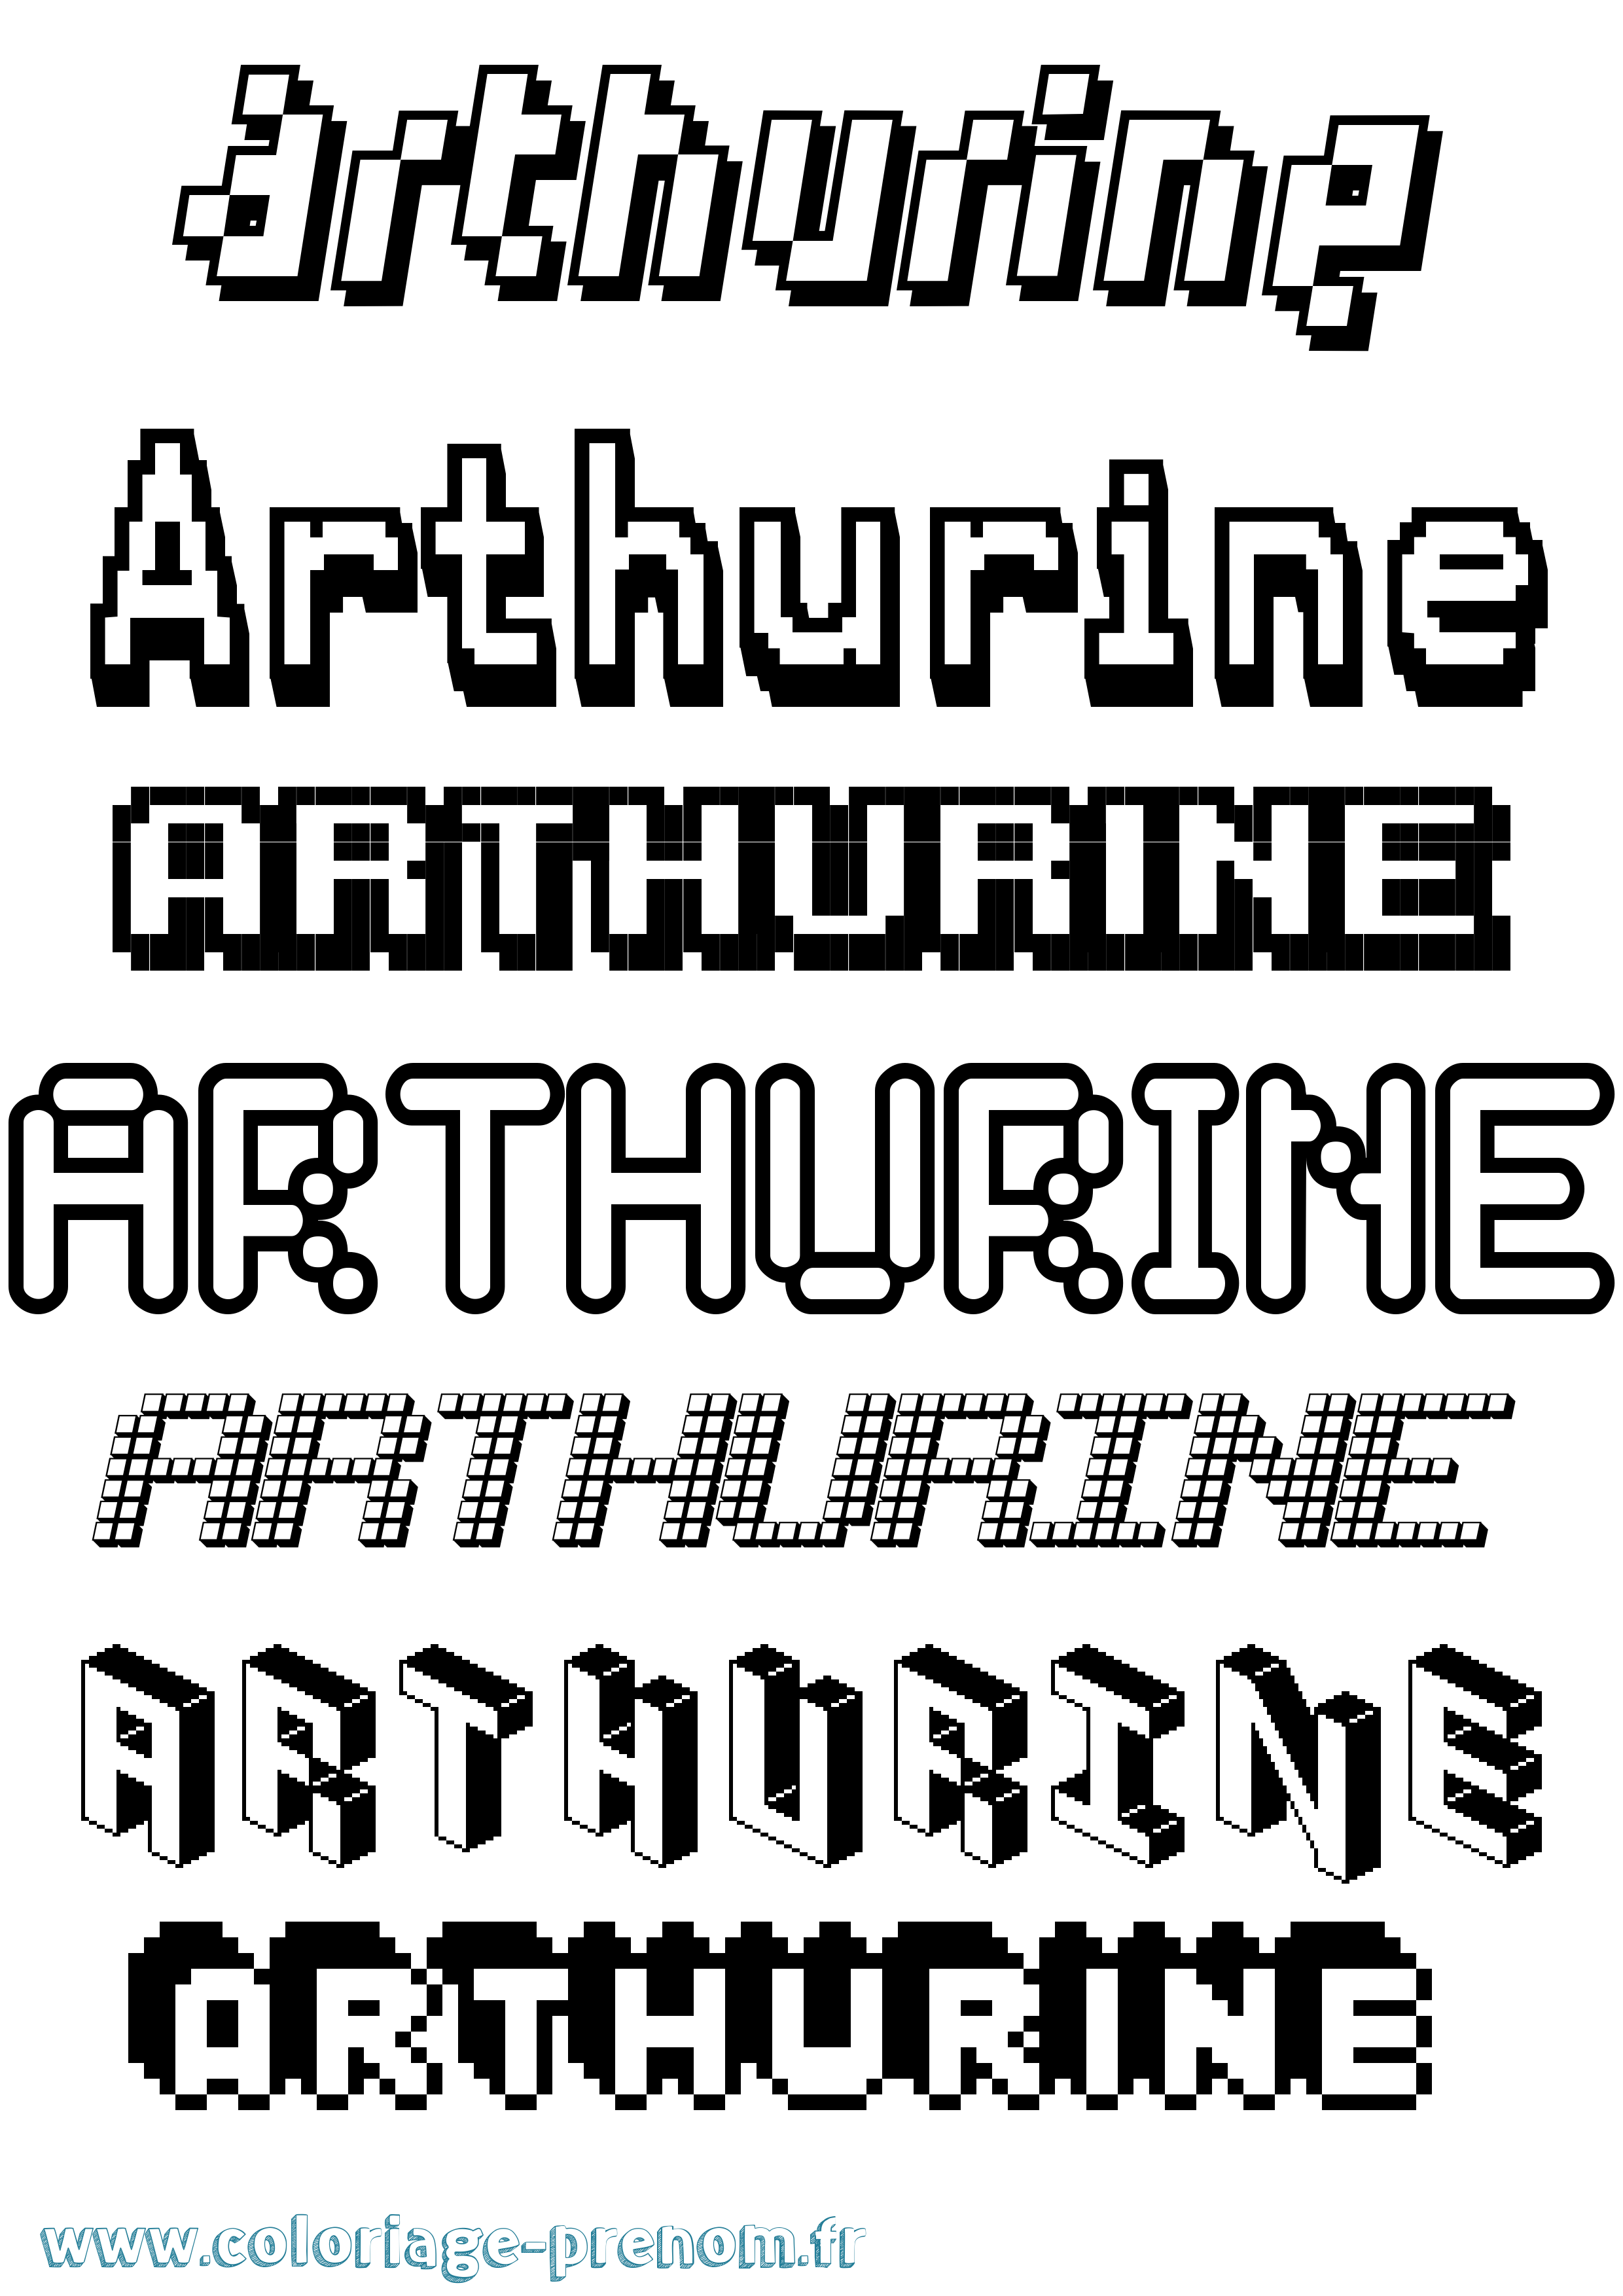 Coloriage prénom Arthurine Pixel